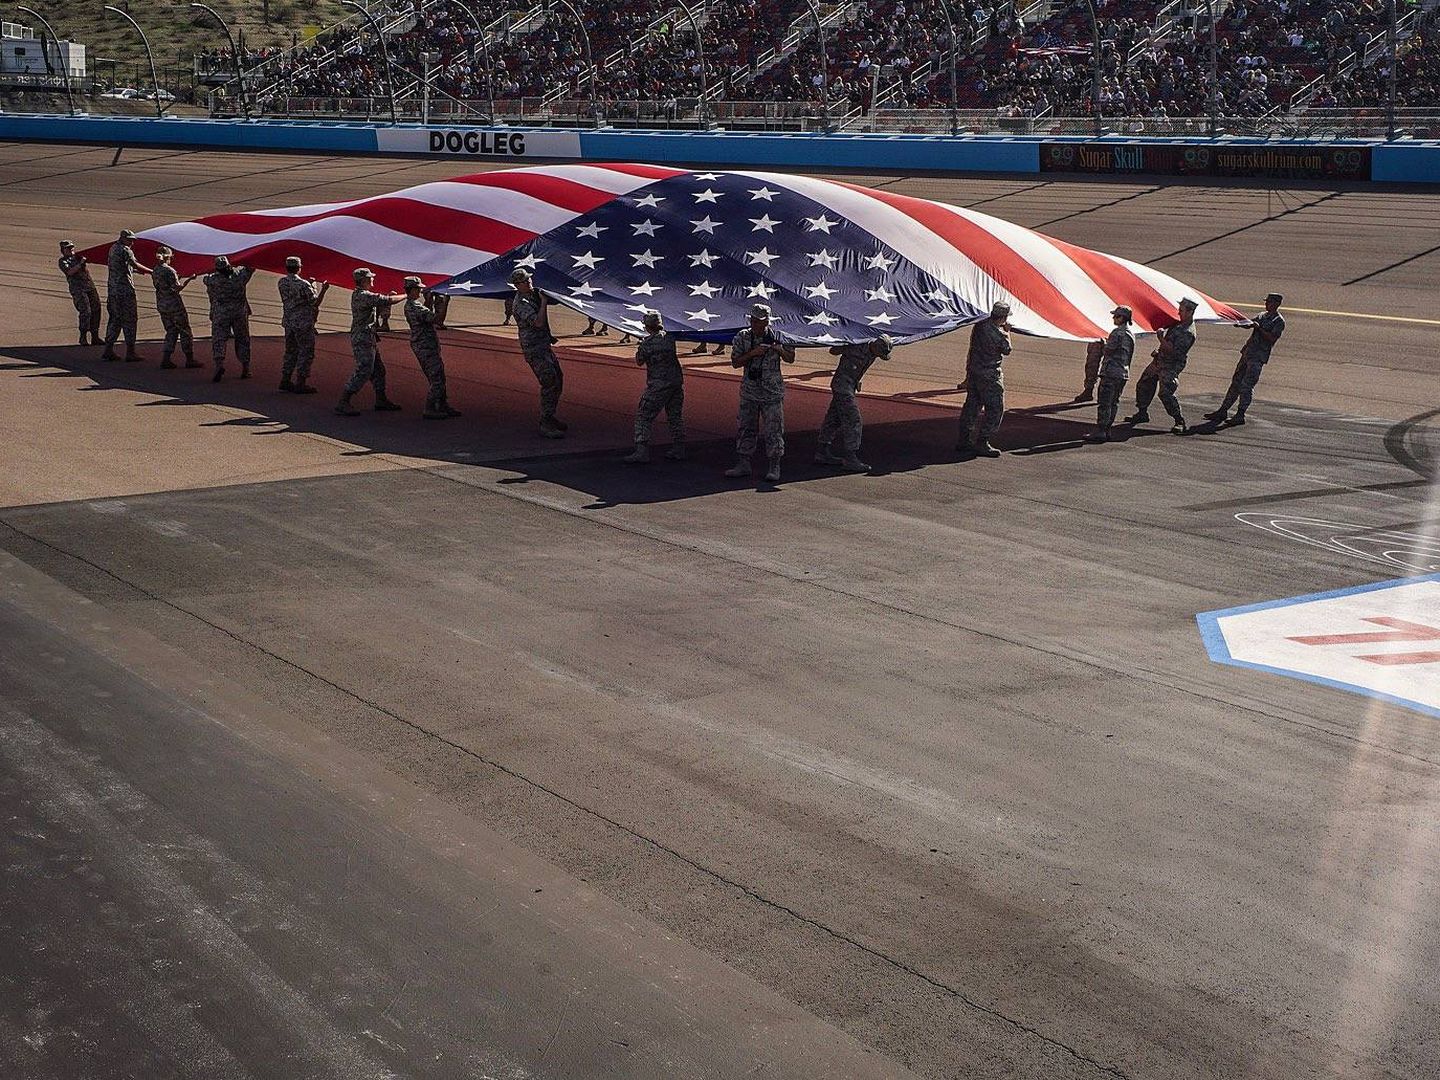 Mlitares estadounidenses recorren el circuito con una bandera. (G. Cervera)